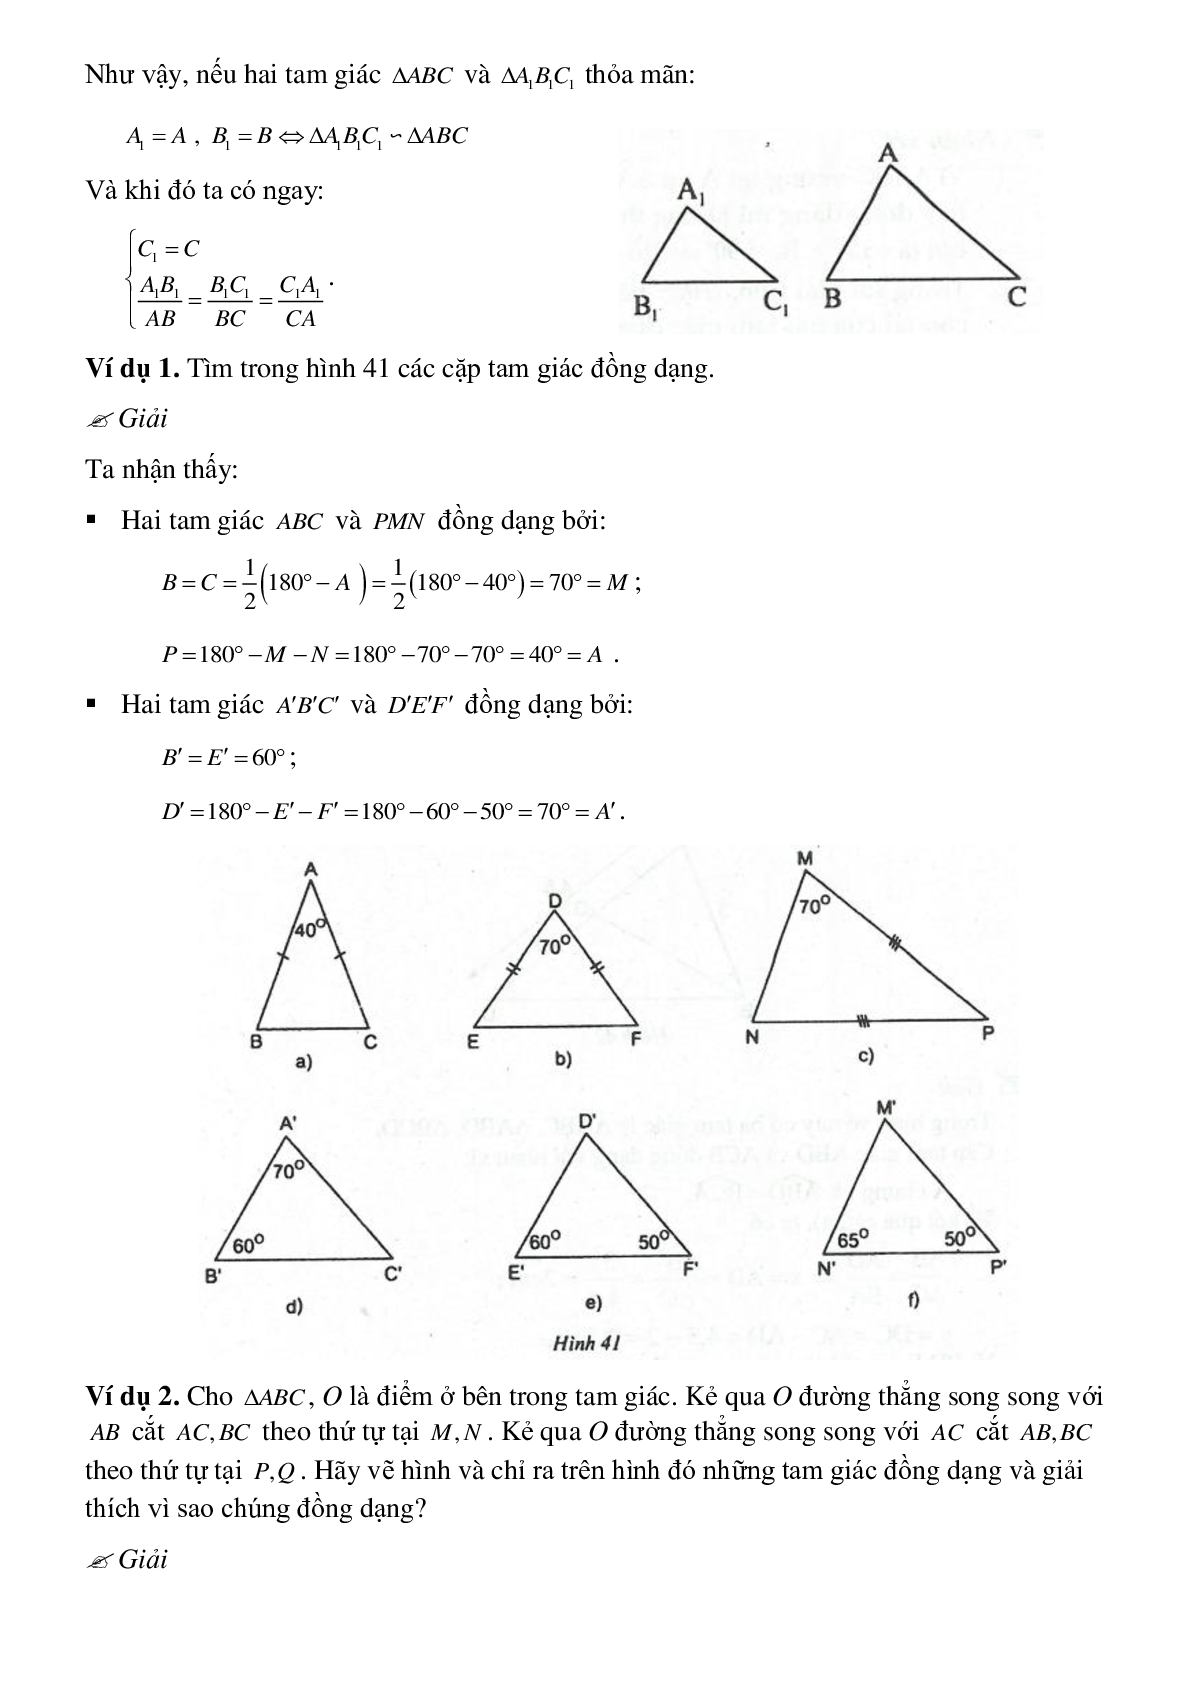 Phương pháp giải chi tiết, bài tập về Chứng minh hai tam giác đồng dạng chọn lọc (trang 5)